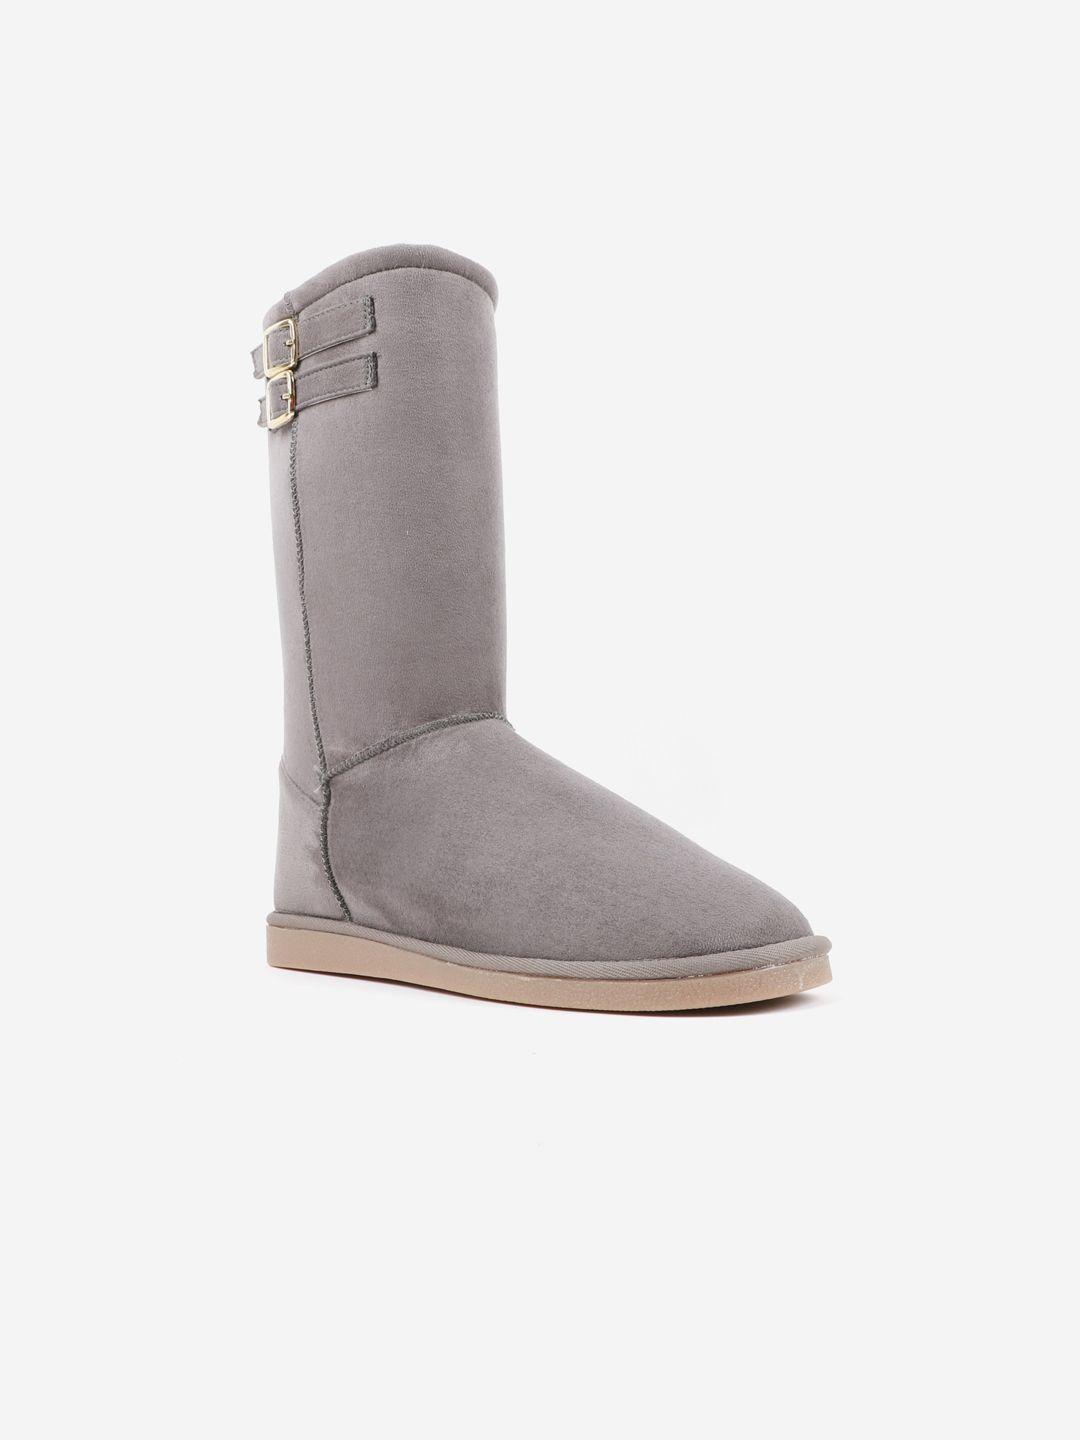 carlton-london-women-grey-lightweight-flat-boots